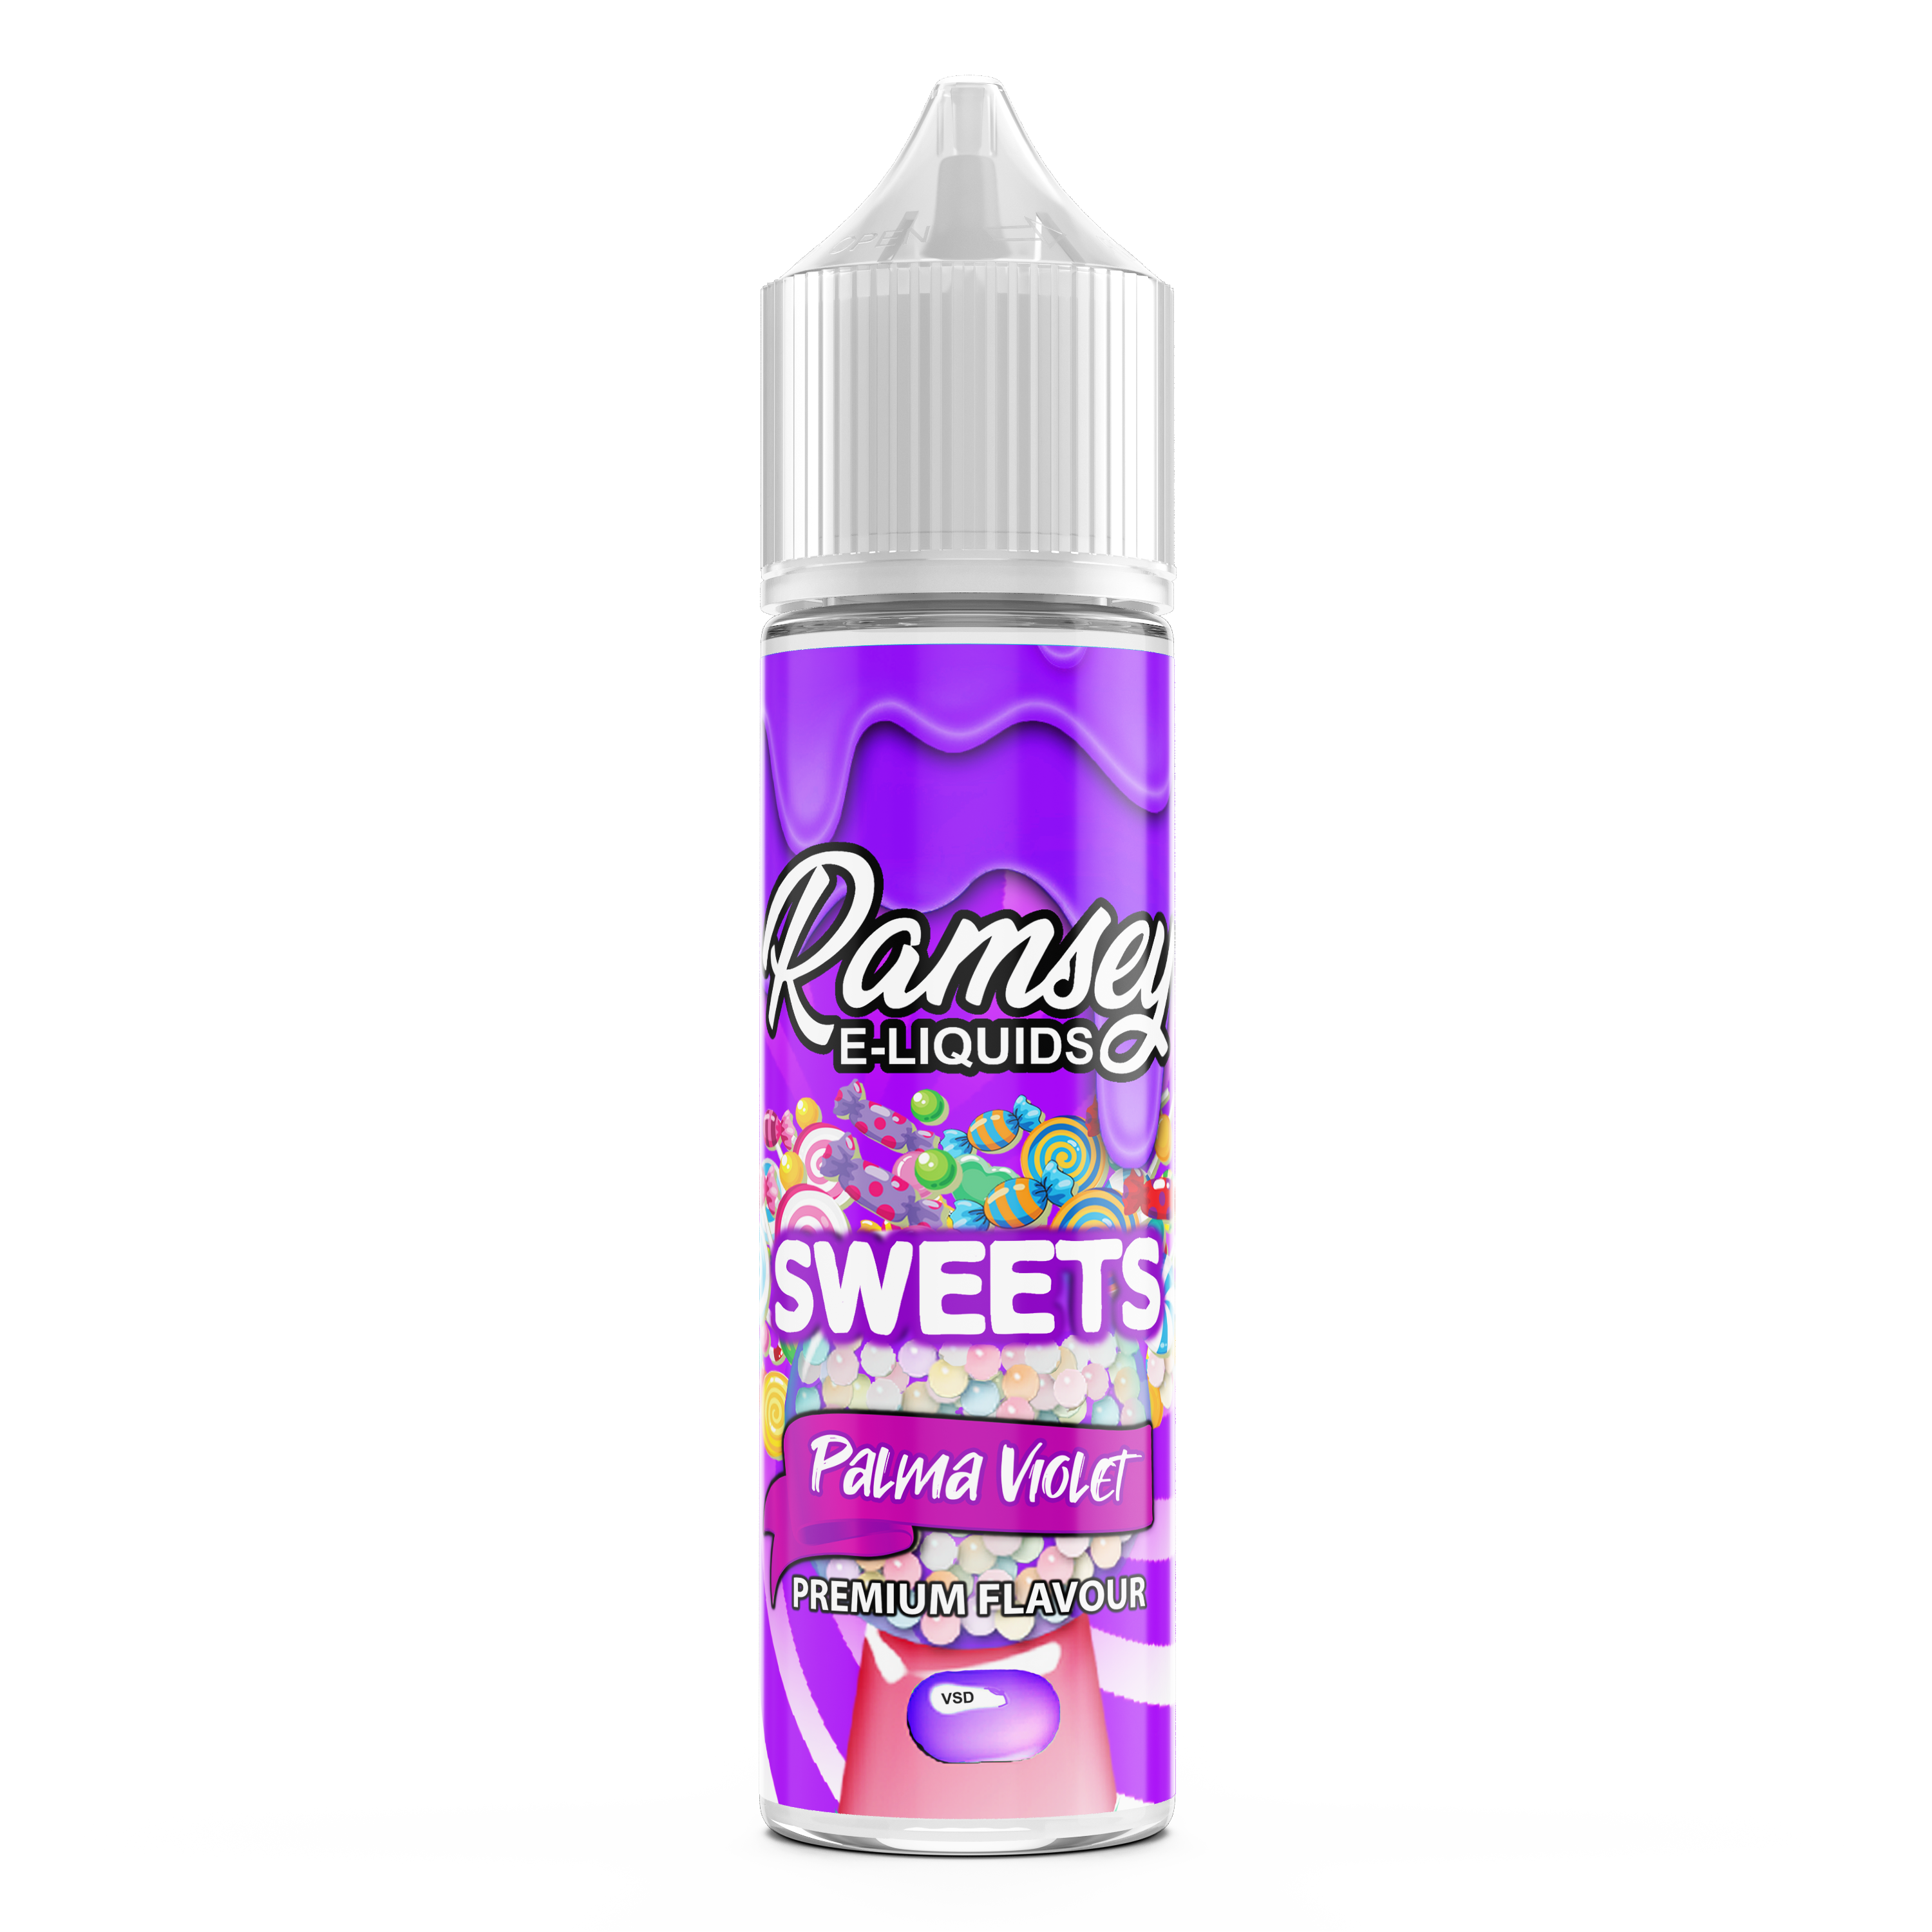 Ramsey E-Liquids Sweets Palma Violets 0mg 50ml Short Fill E-Liquid